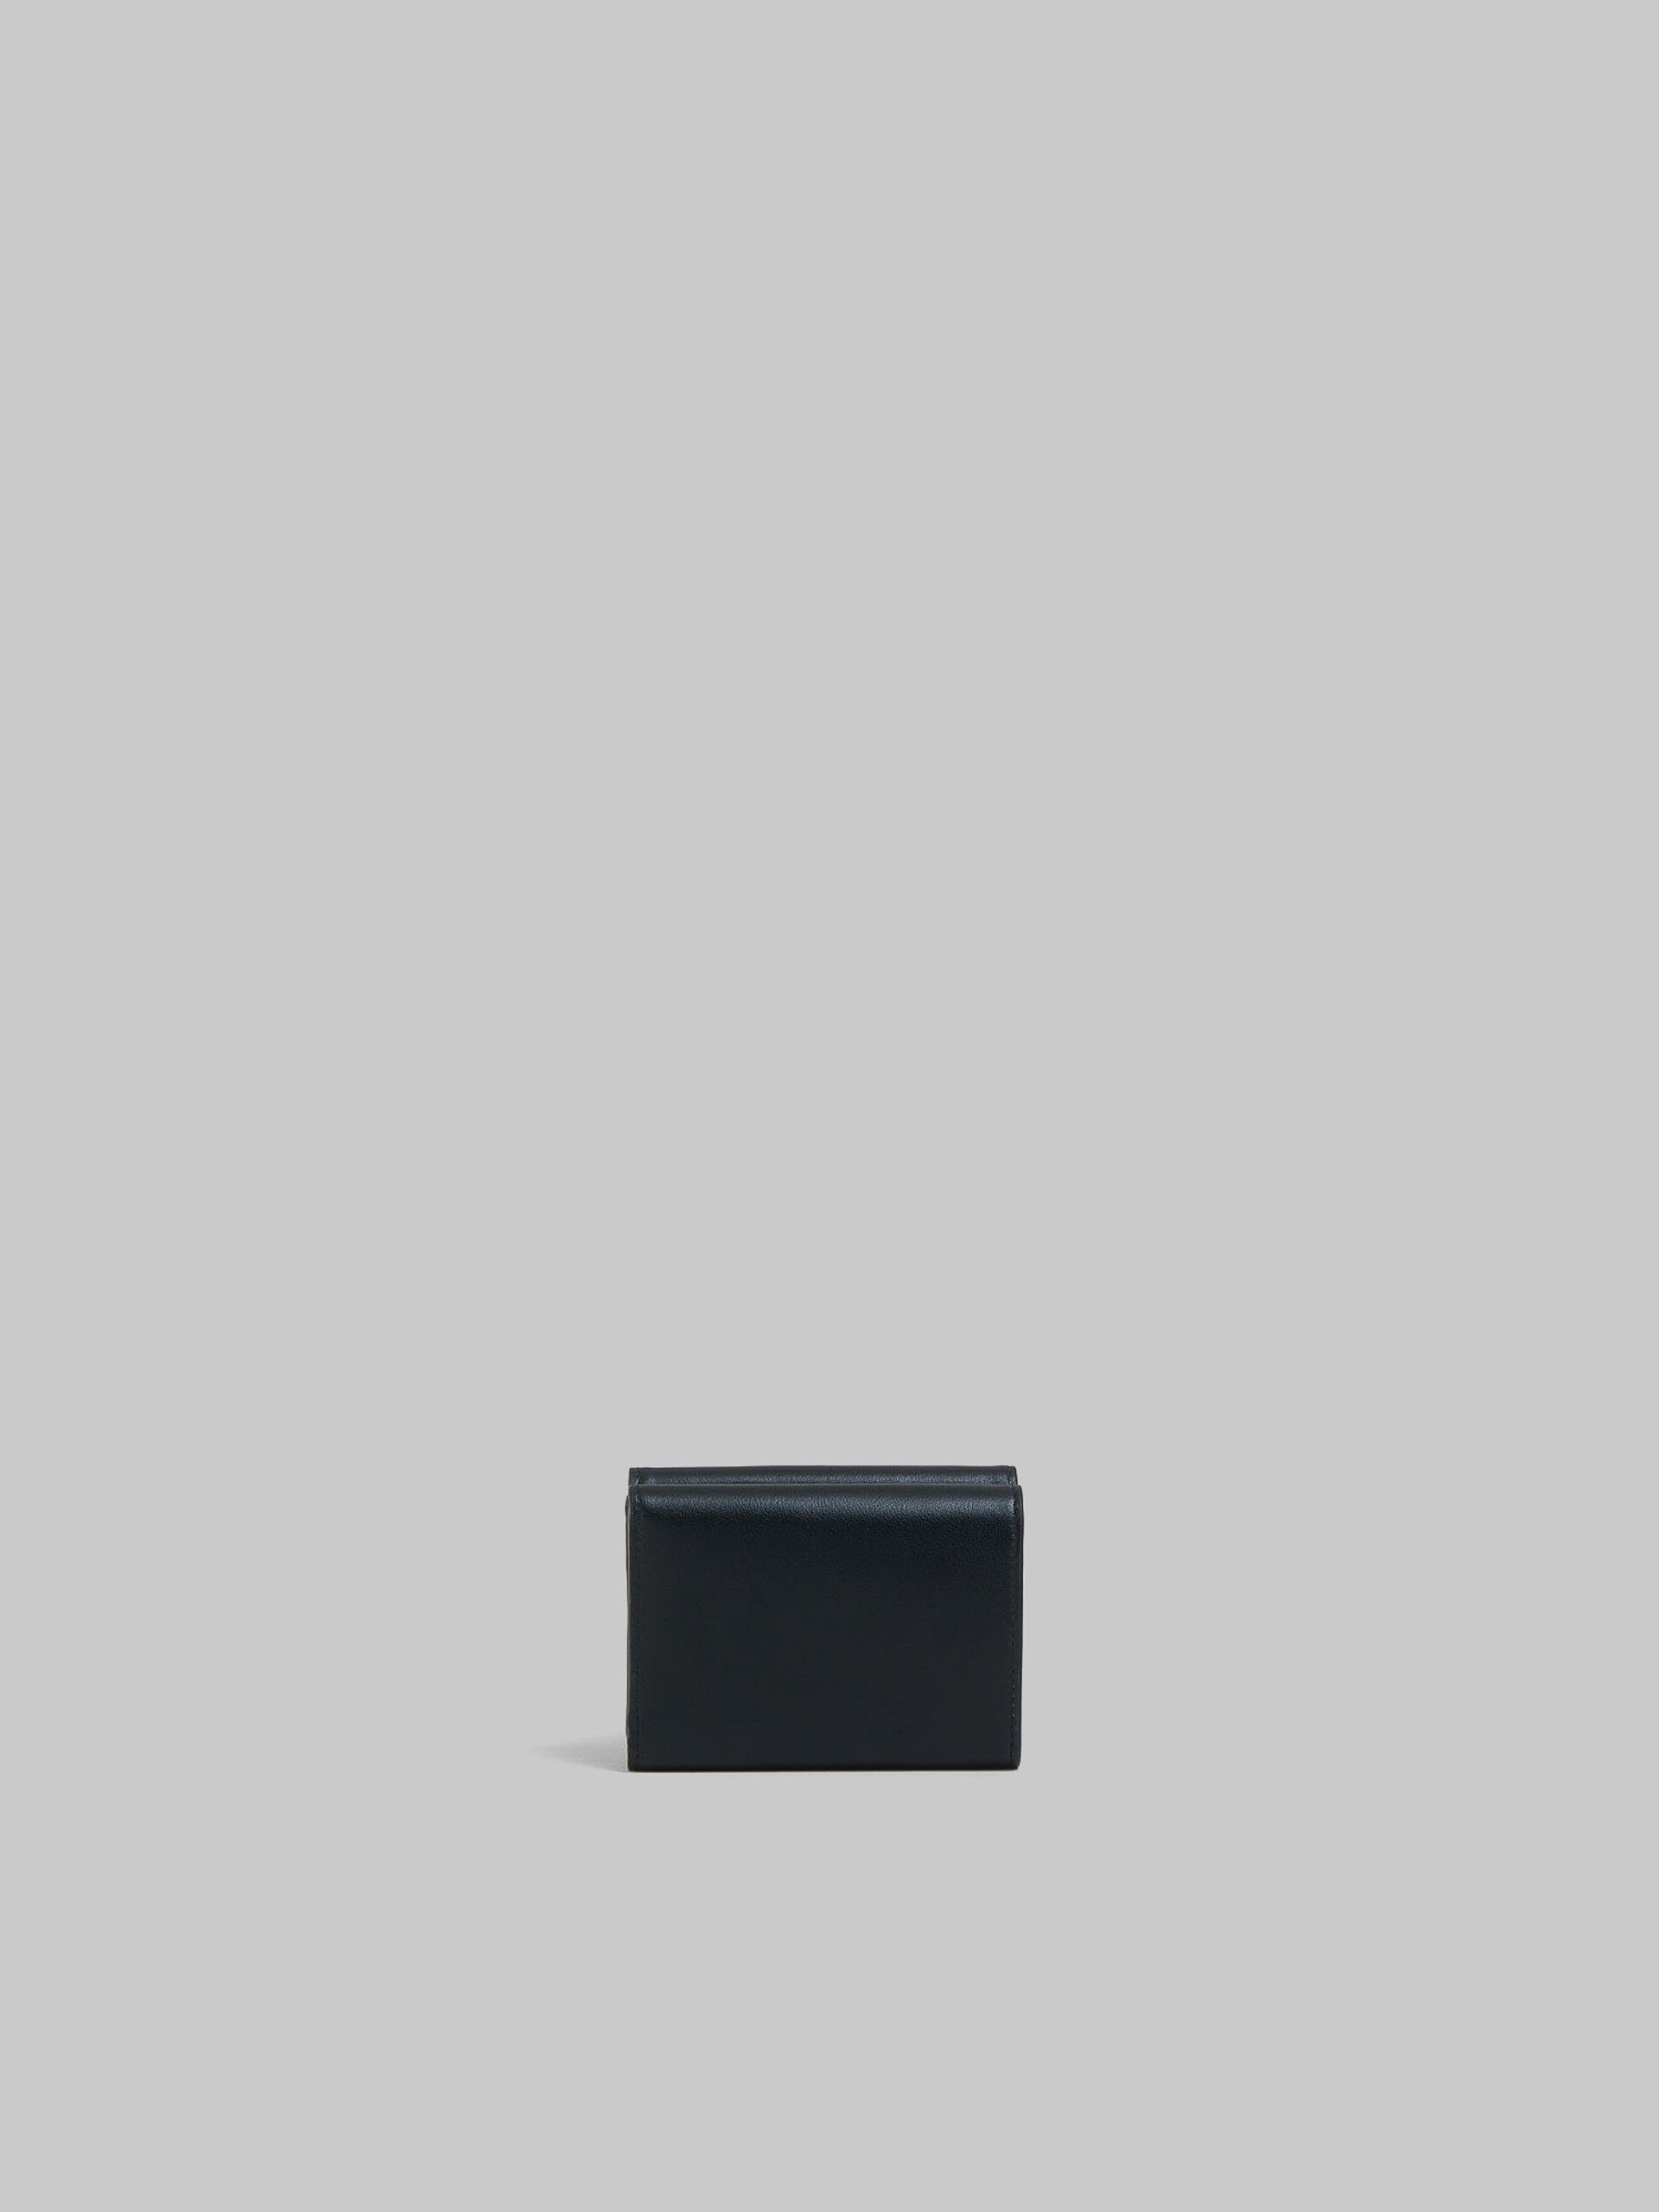 ブルー レザー製 三つ折りウォレット、レイズド マルニロゴ - 財布 - Image 3